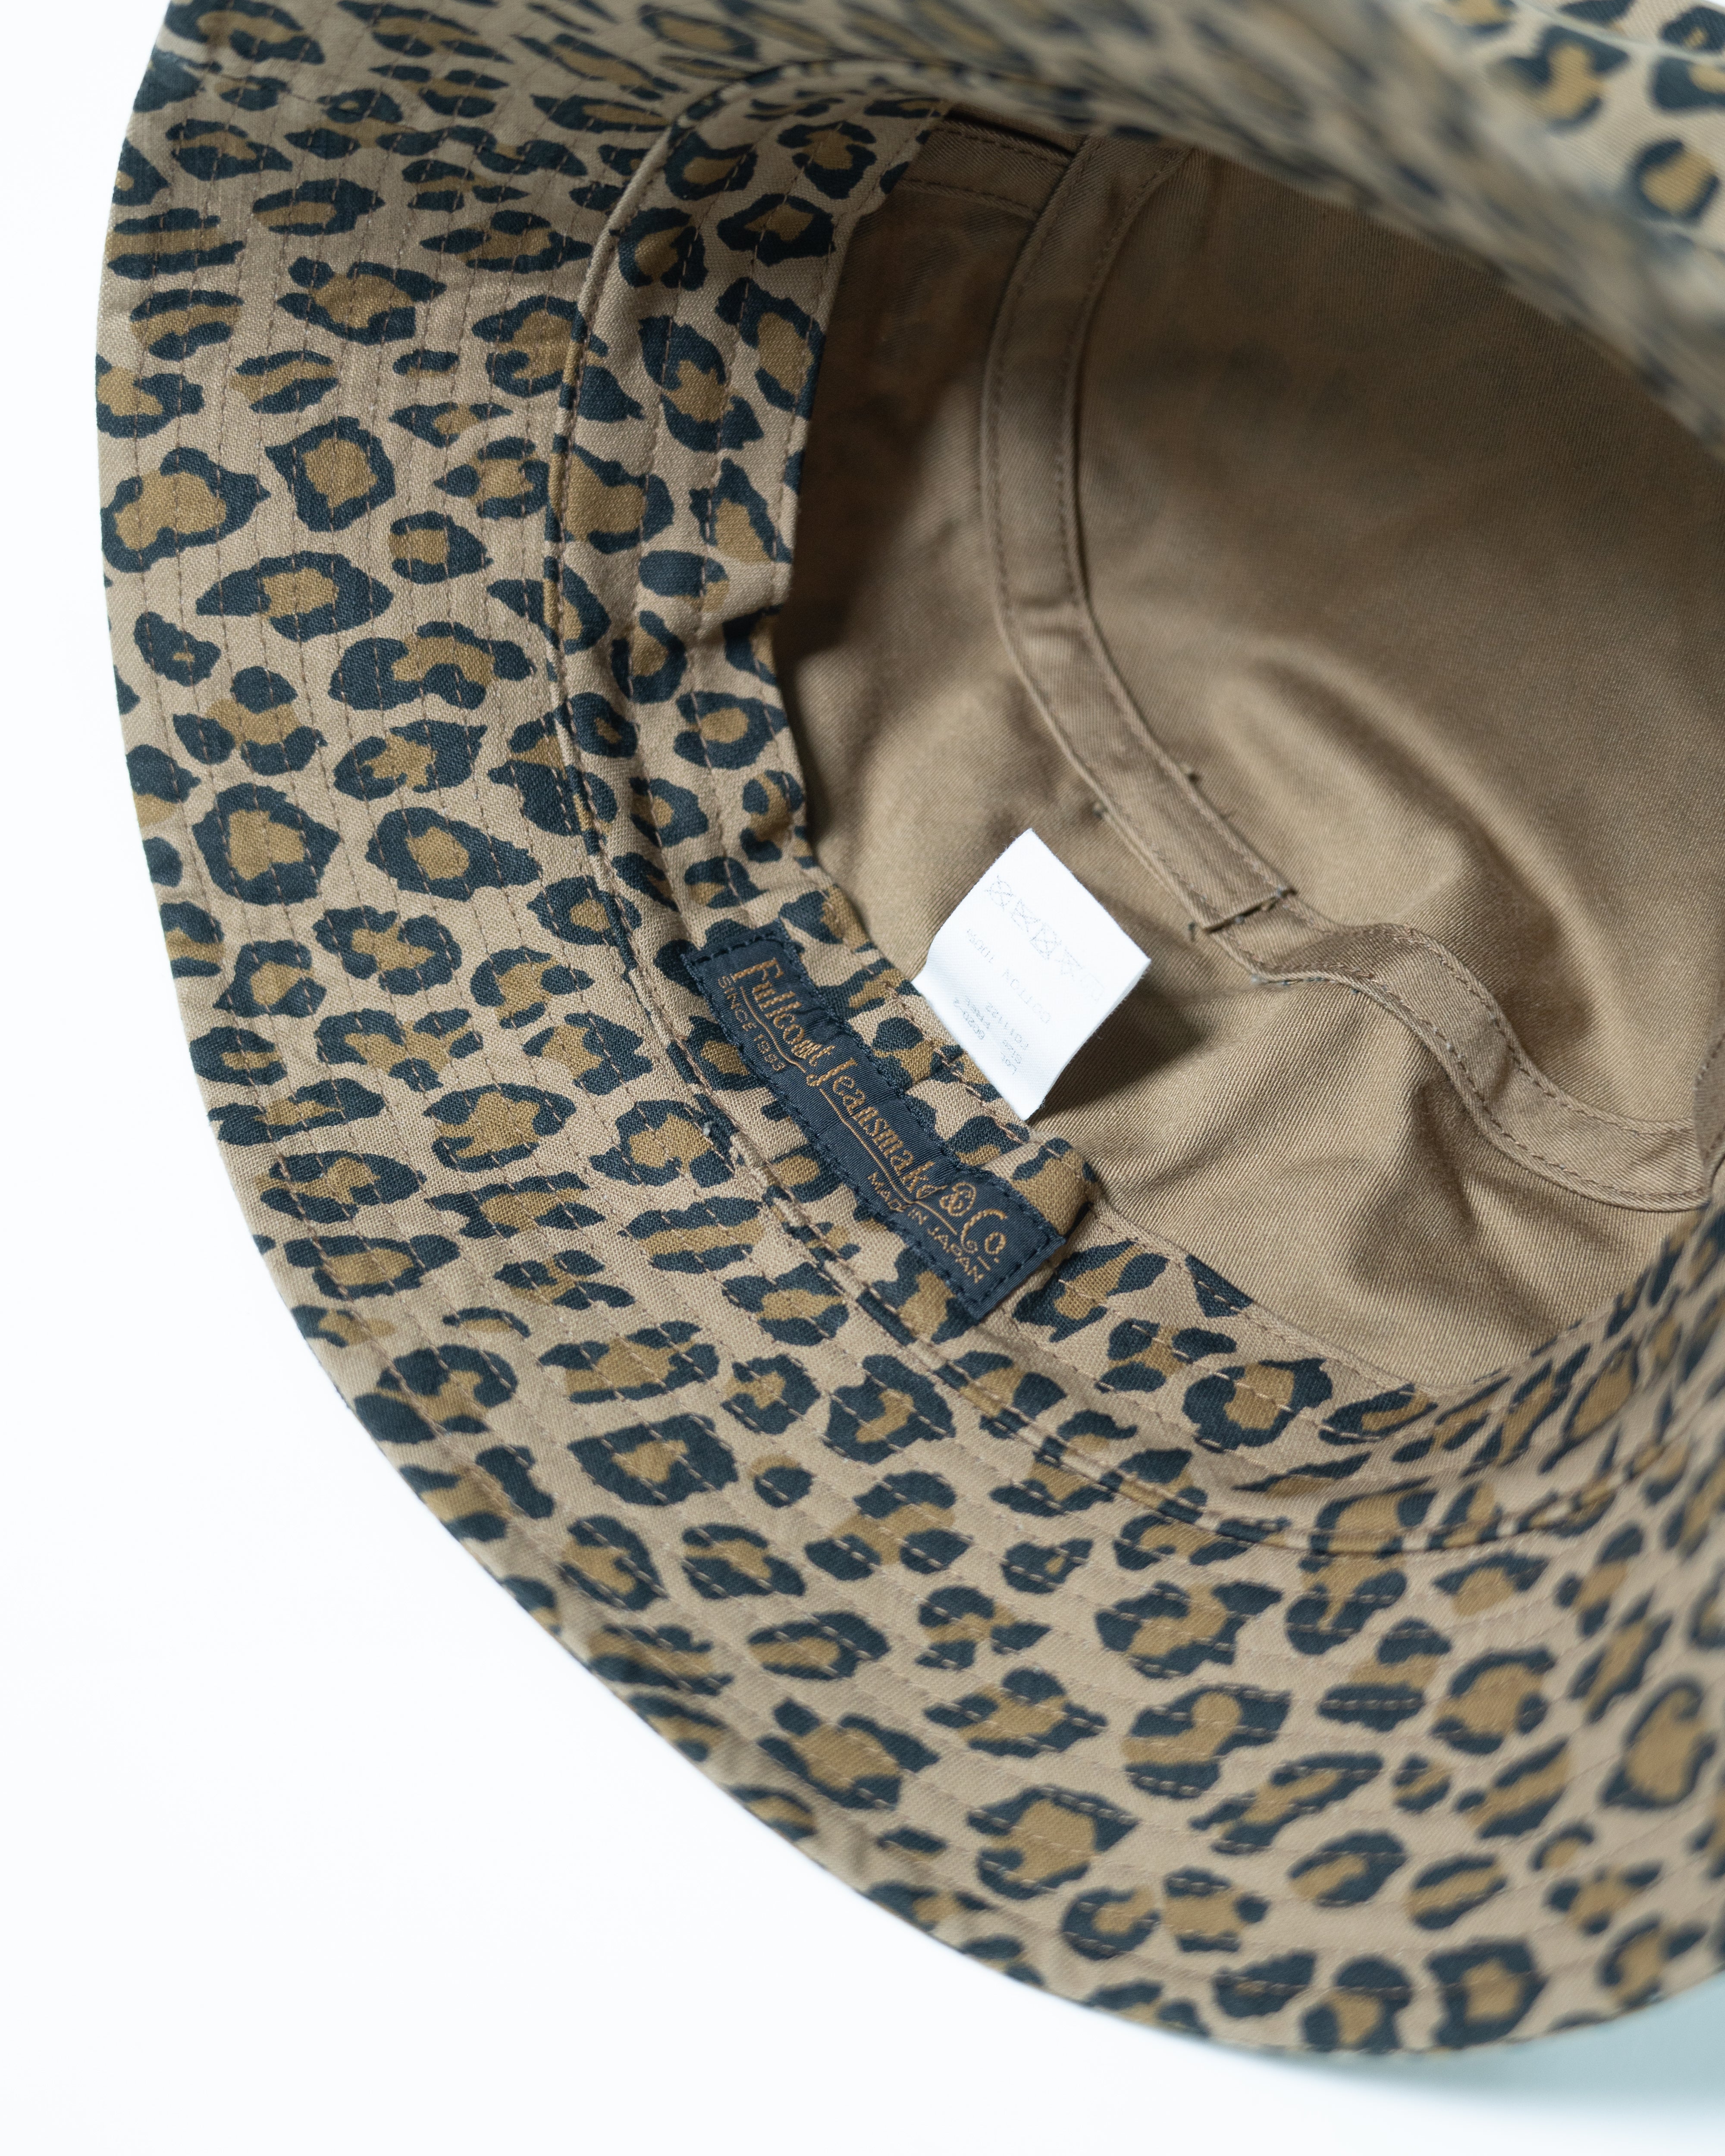 Leopard Bucket Hat 6020 | Leopard